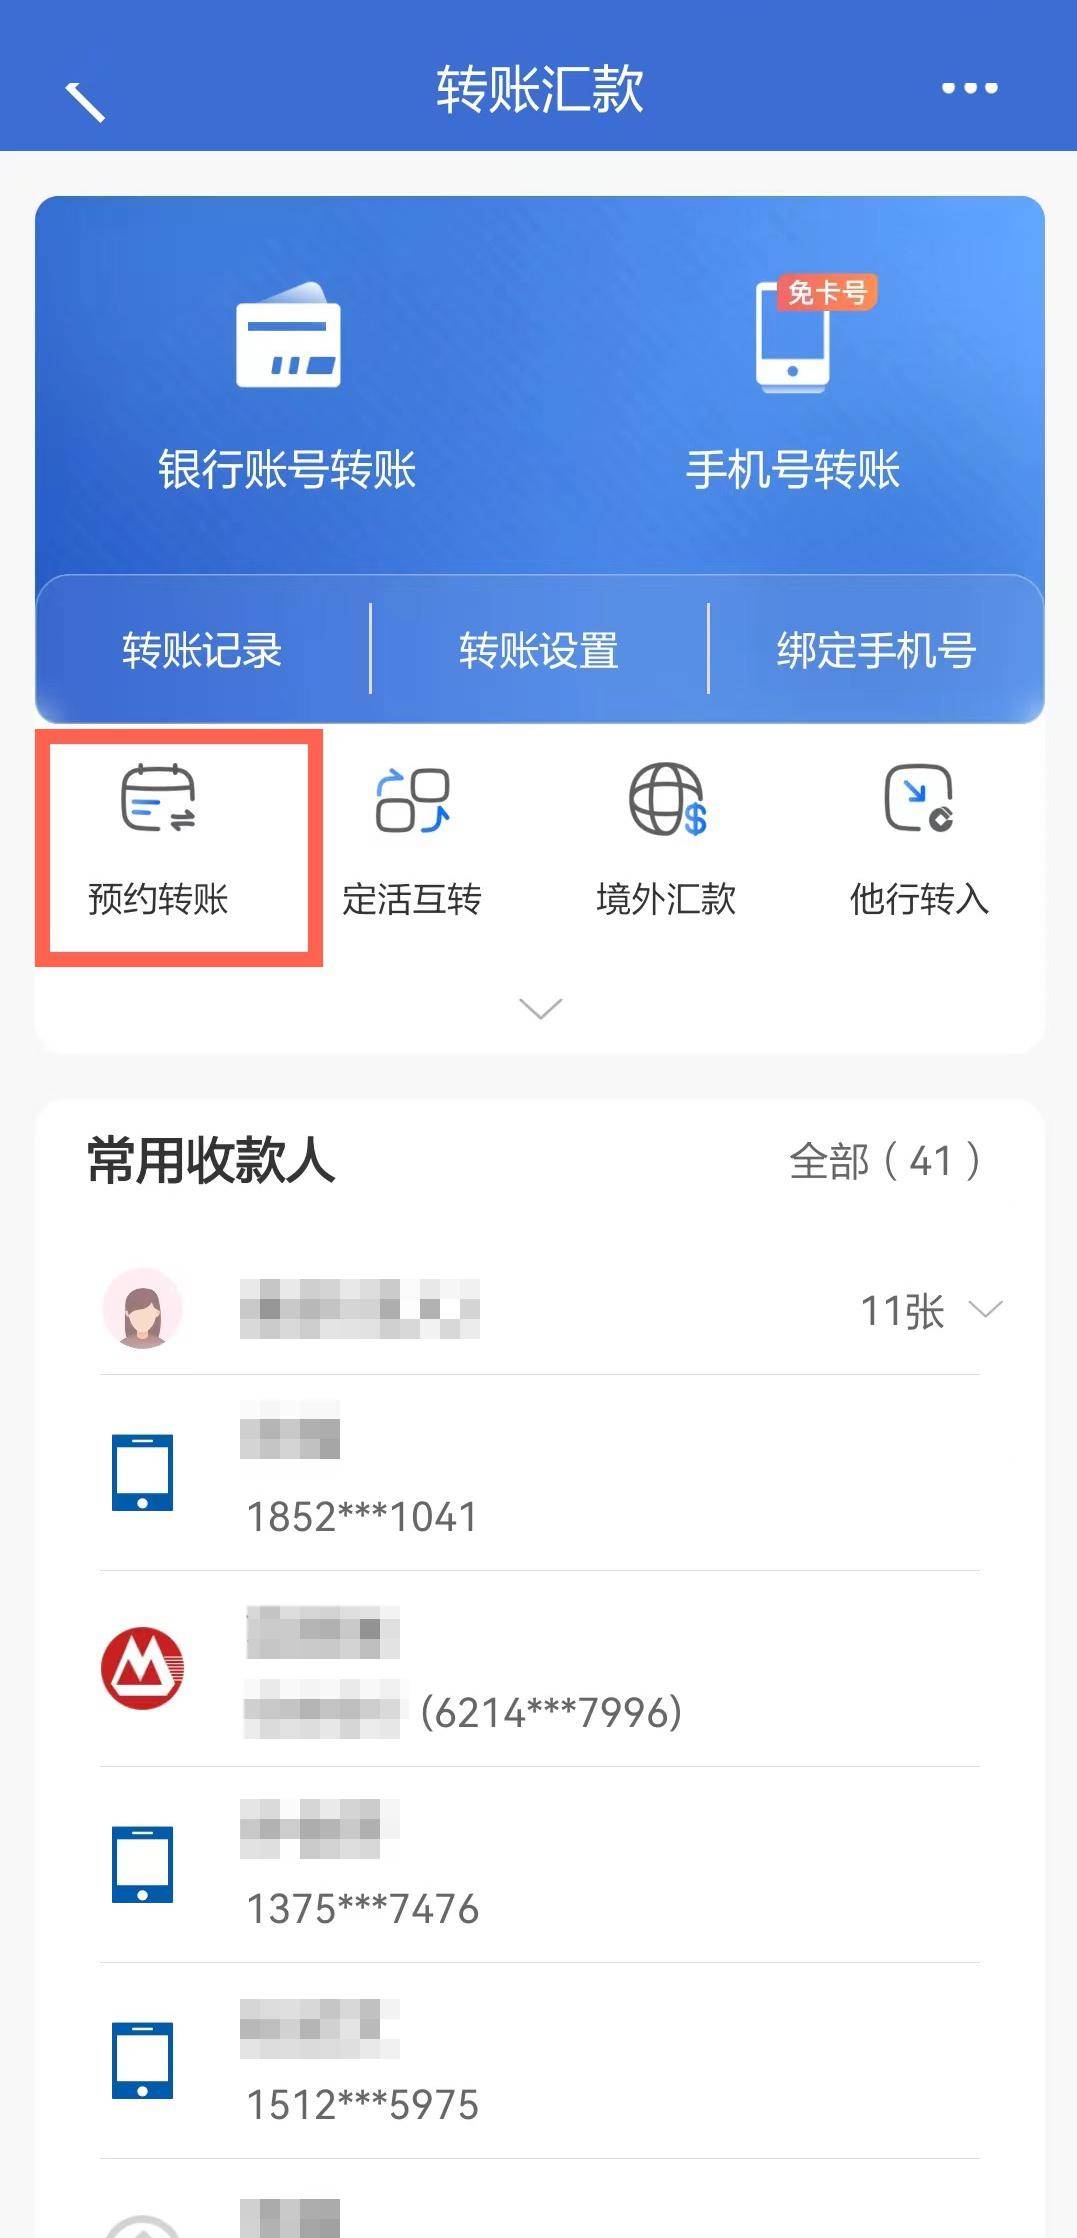 登录中国建设银行app,选择转账汇款,点击预约转账